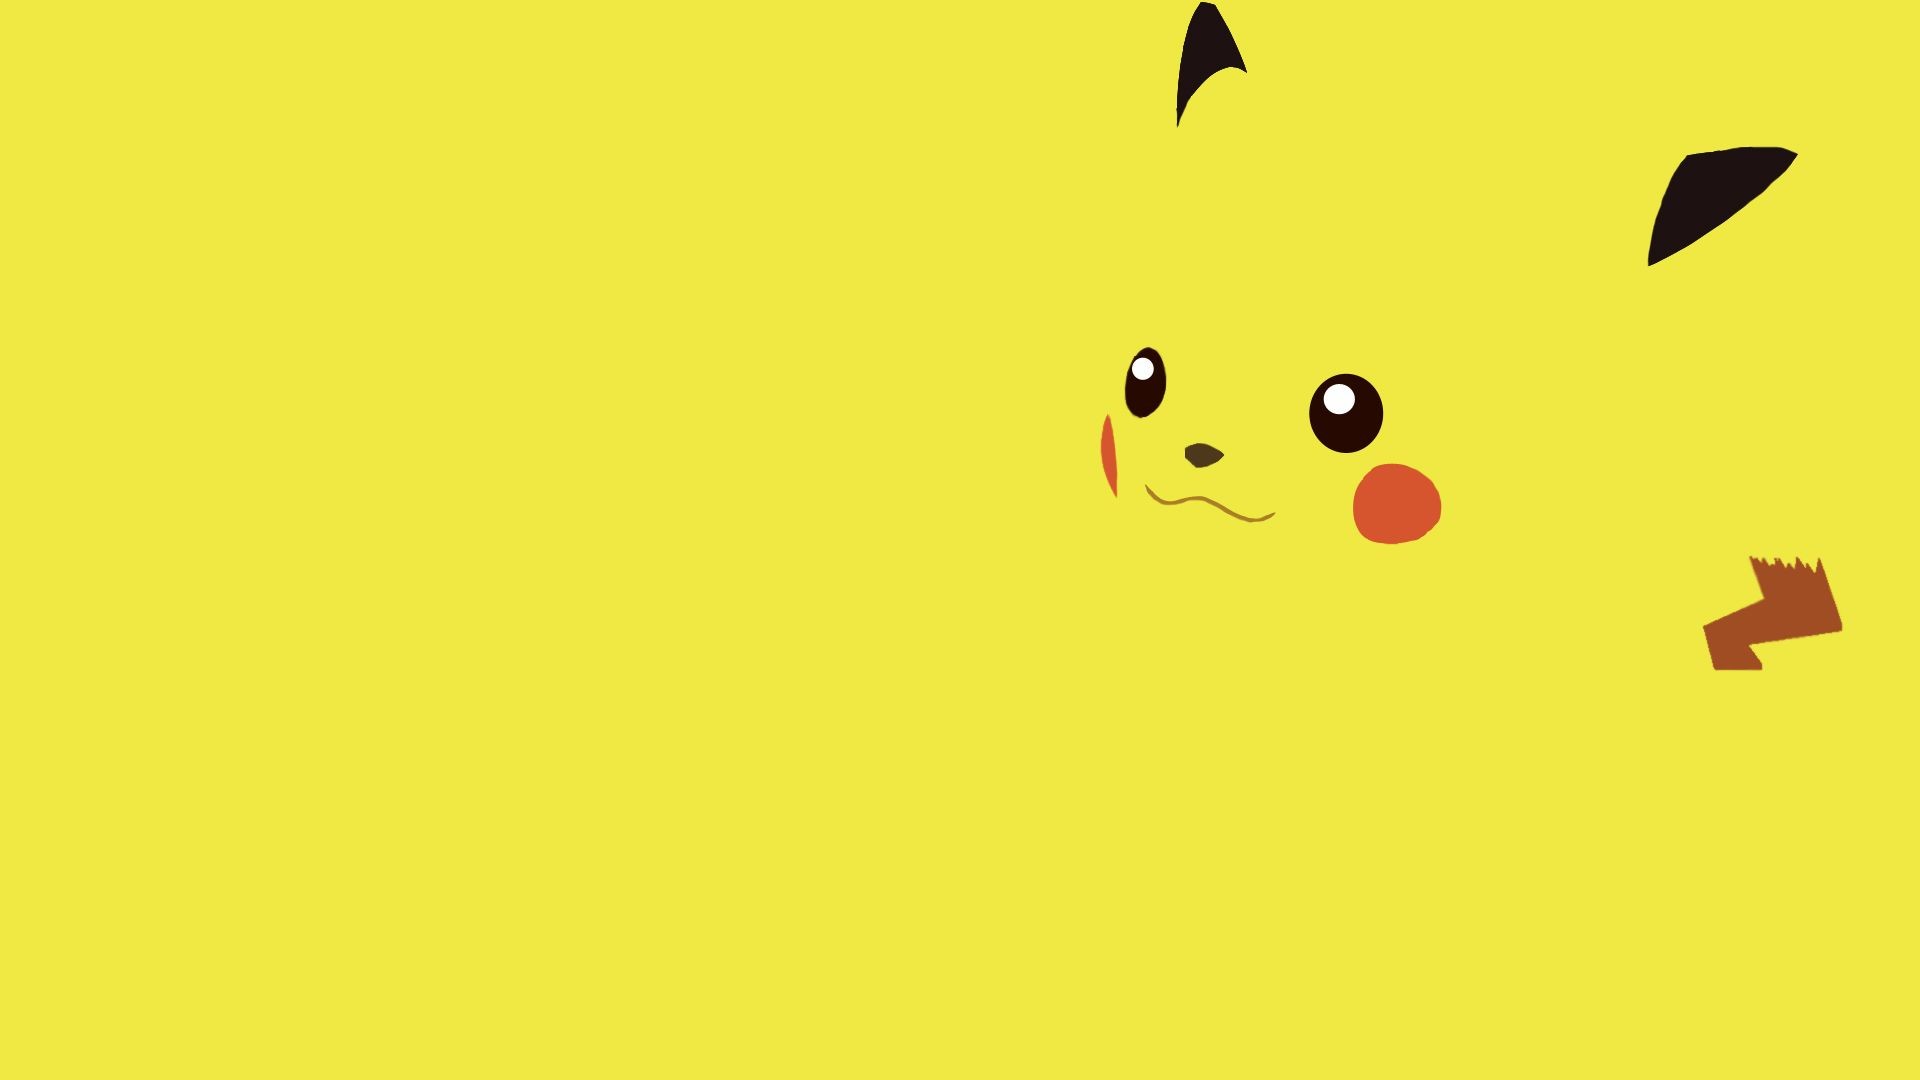 HD Pikachu Wallpapers Pikachu Widescreen